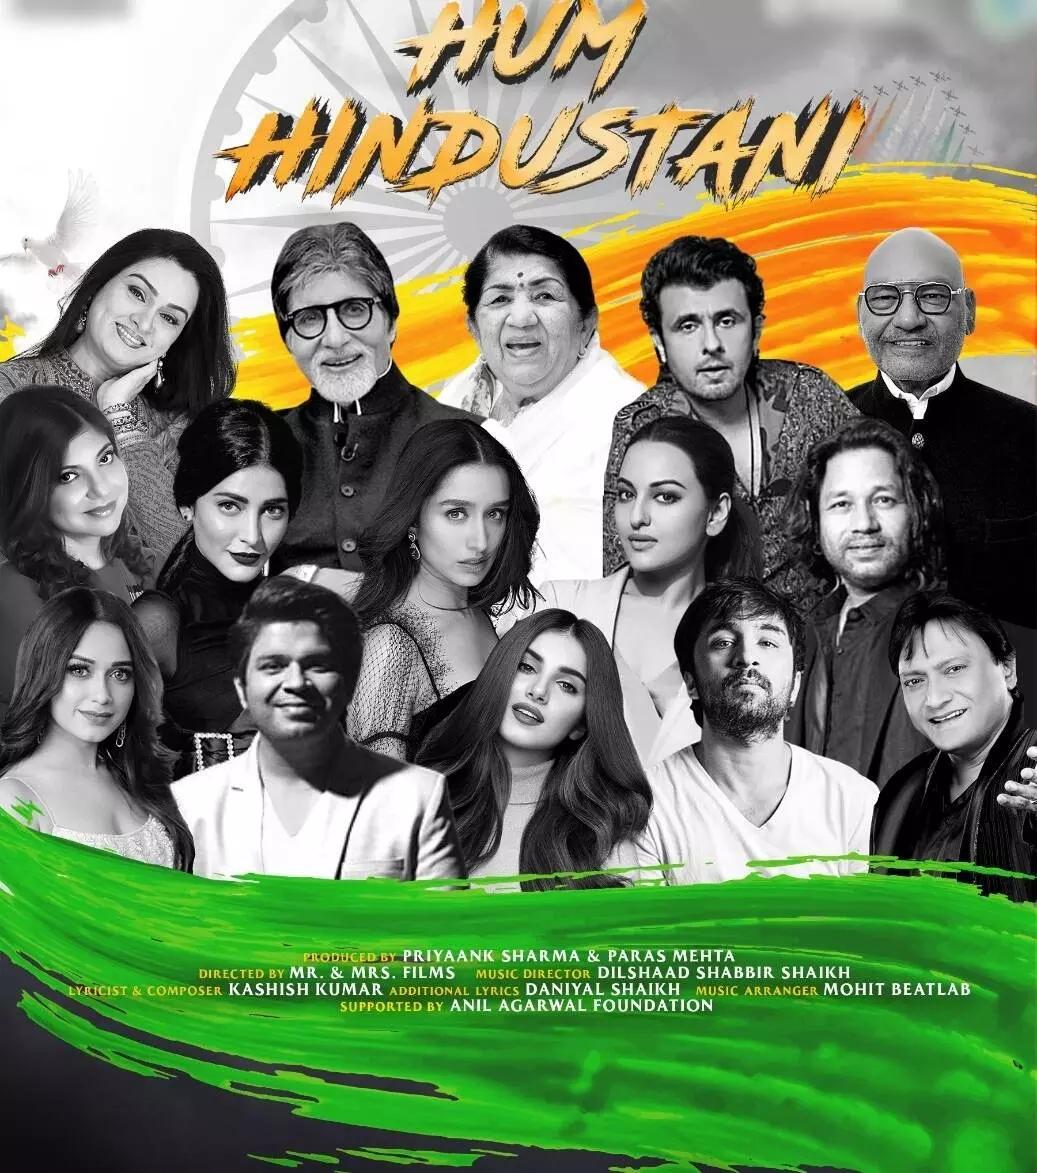 Lata Mangeshkar, Amitabh Bachchan, Sonu Nigam sing together for 'Hum Hindustani'